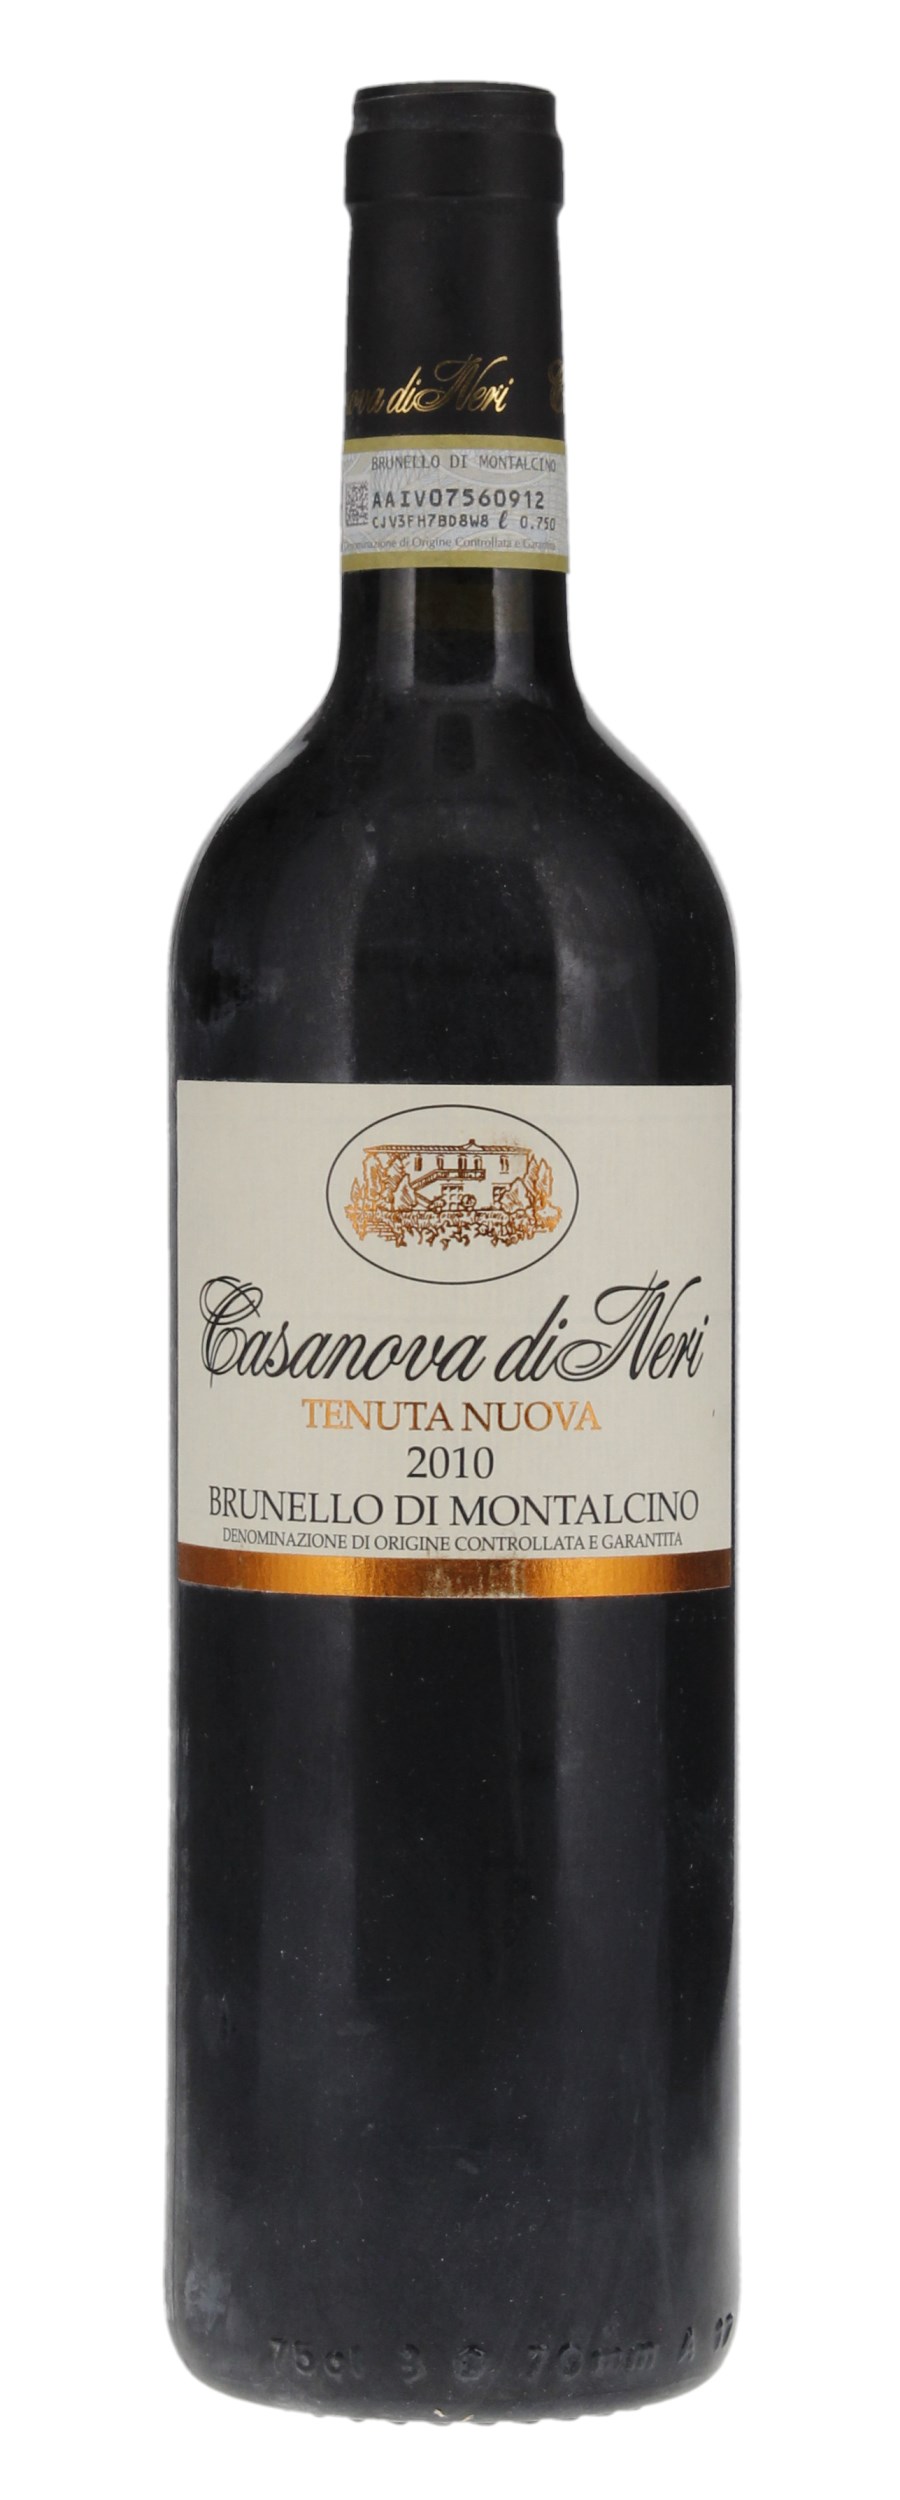 2010 Casanova di Neri Brunello di Montalcino Tenuta Nuova, 750ml